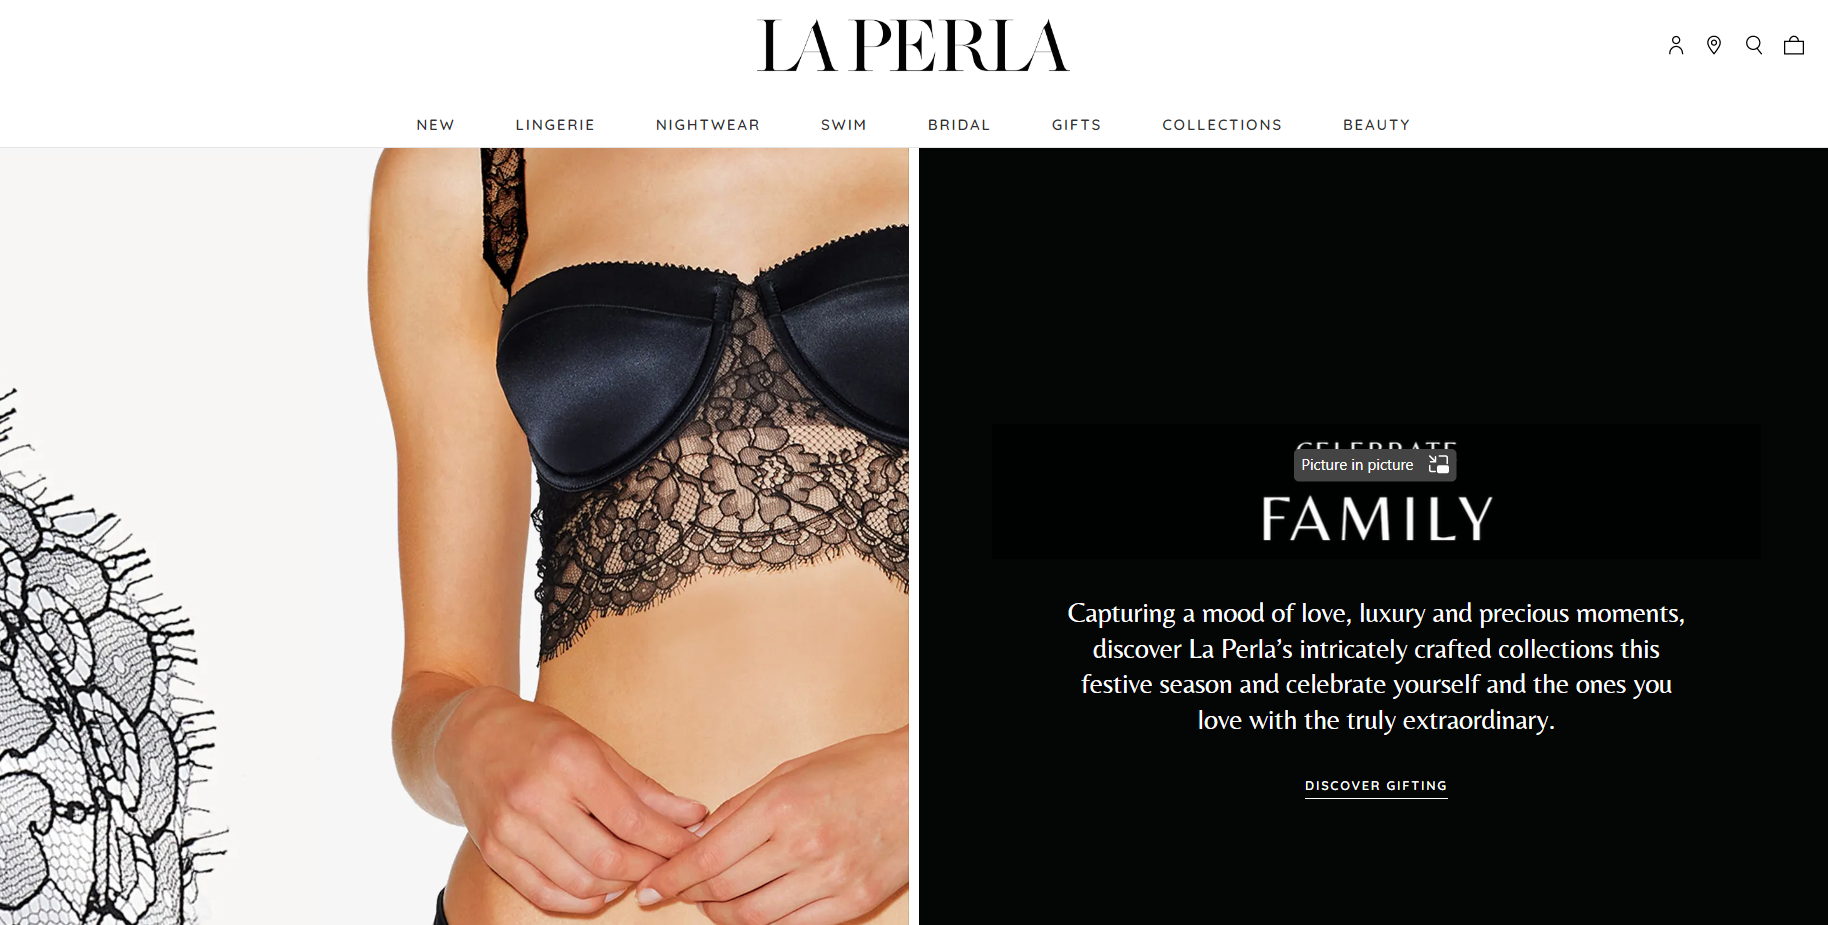 意大利奢侈内衣品牌 La Perla 授权 ISA SpA 打造全新女士泳装条线